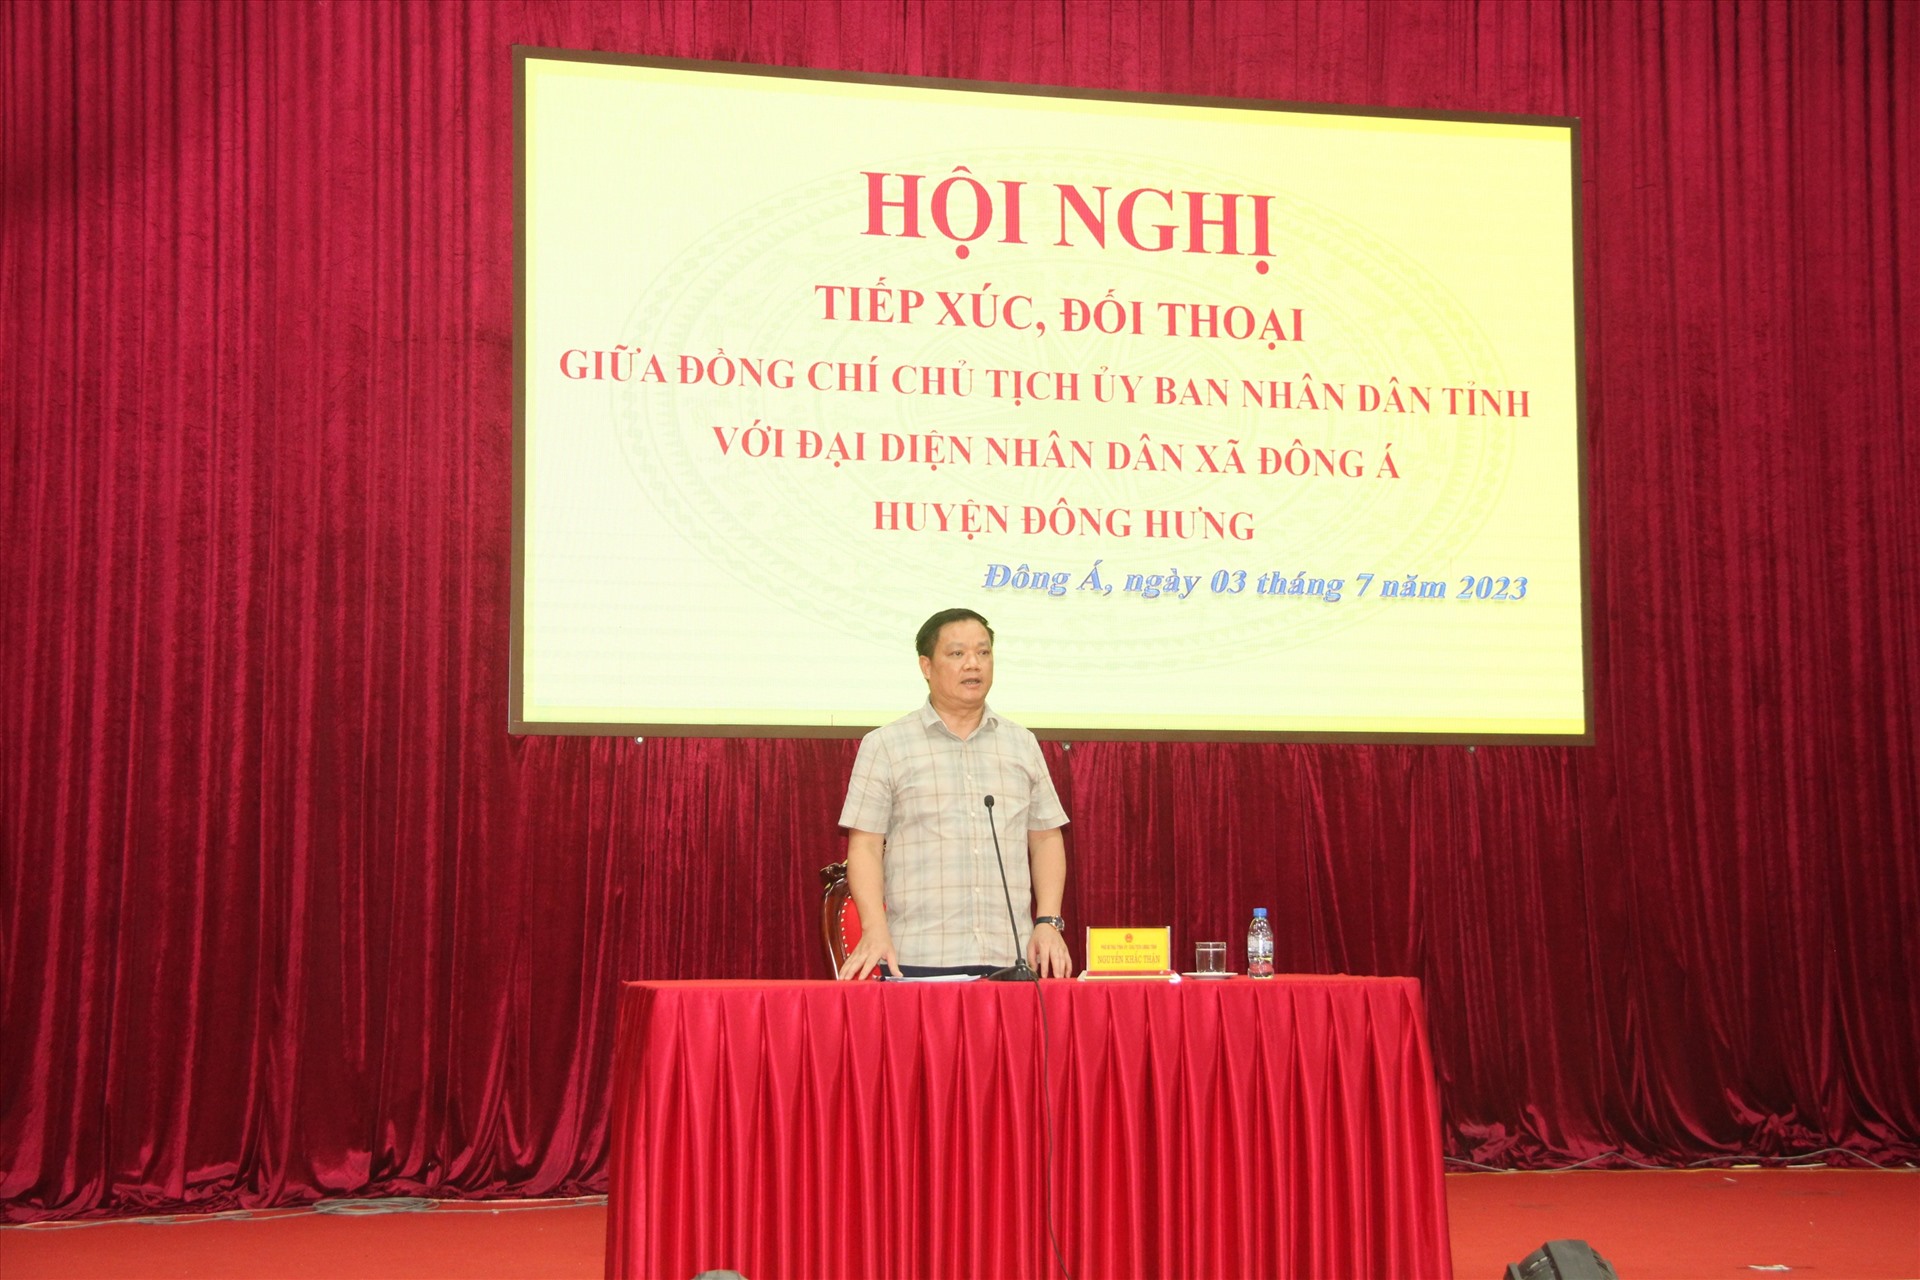 Ông Nguyễn Khắc Thận - Phó Bí thư Tỉnh ủy, Chủ tịch UBND tỉnh Thái Bình phát biểu tại buổi tiếp xúc, đối thoại. Ảnh: Hà Vi